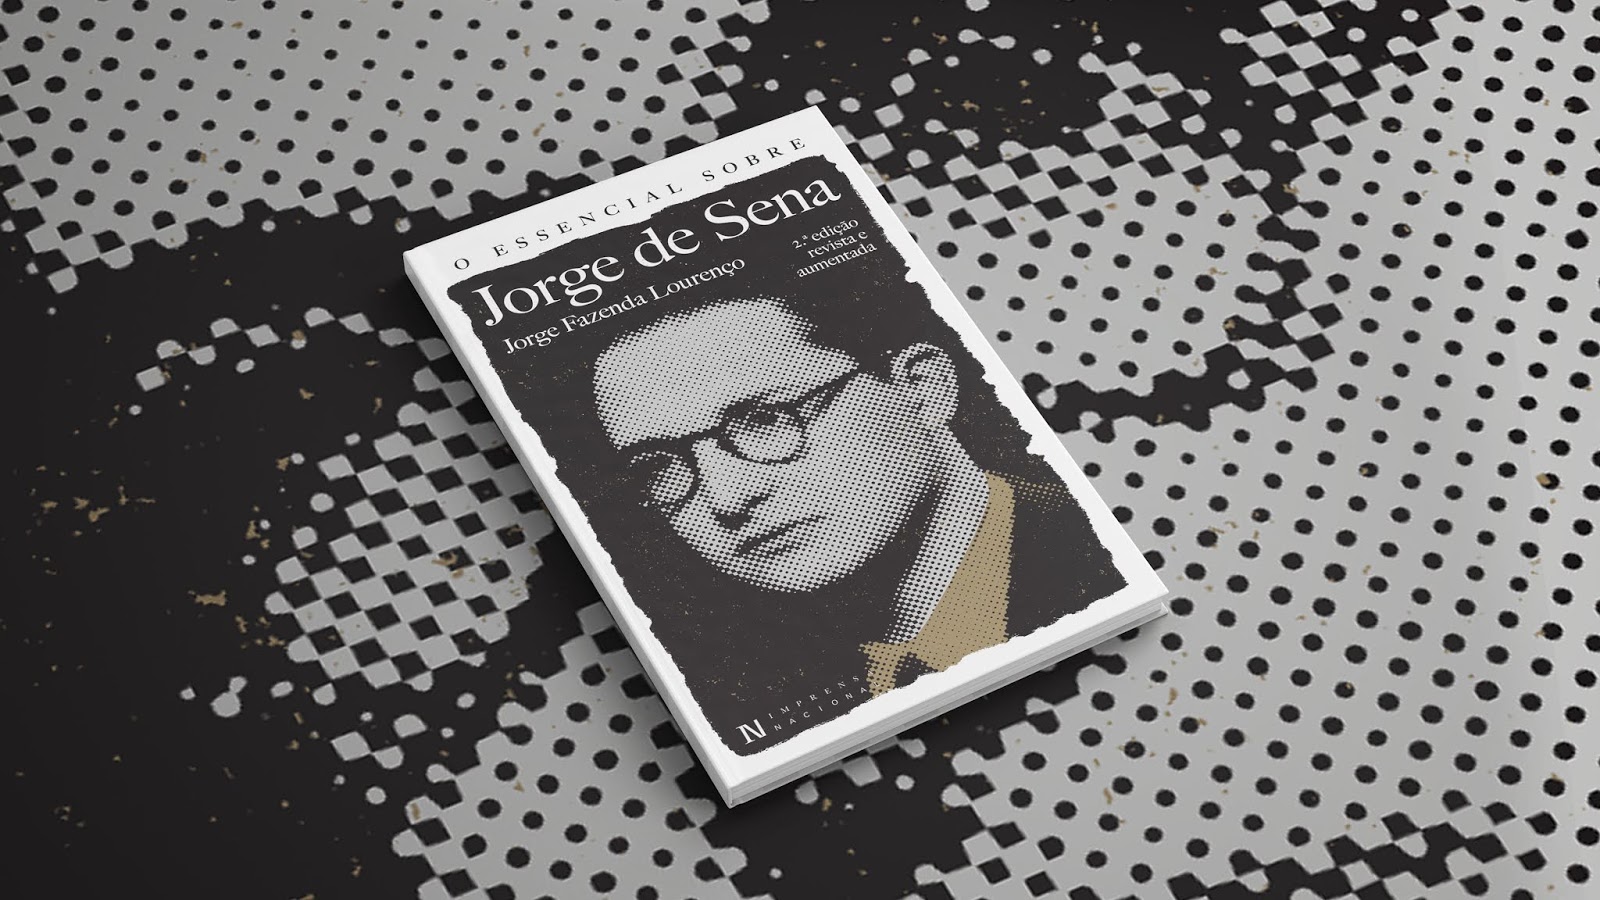 No Centenário de Jorge de Sena a Imprensa Nacional traz «O Essencial Sobre Jorge de Sena», uma  2ª edição revista e aumentada